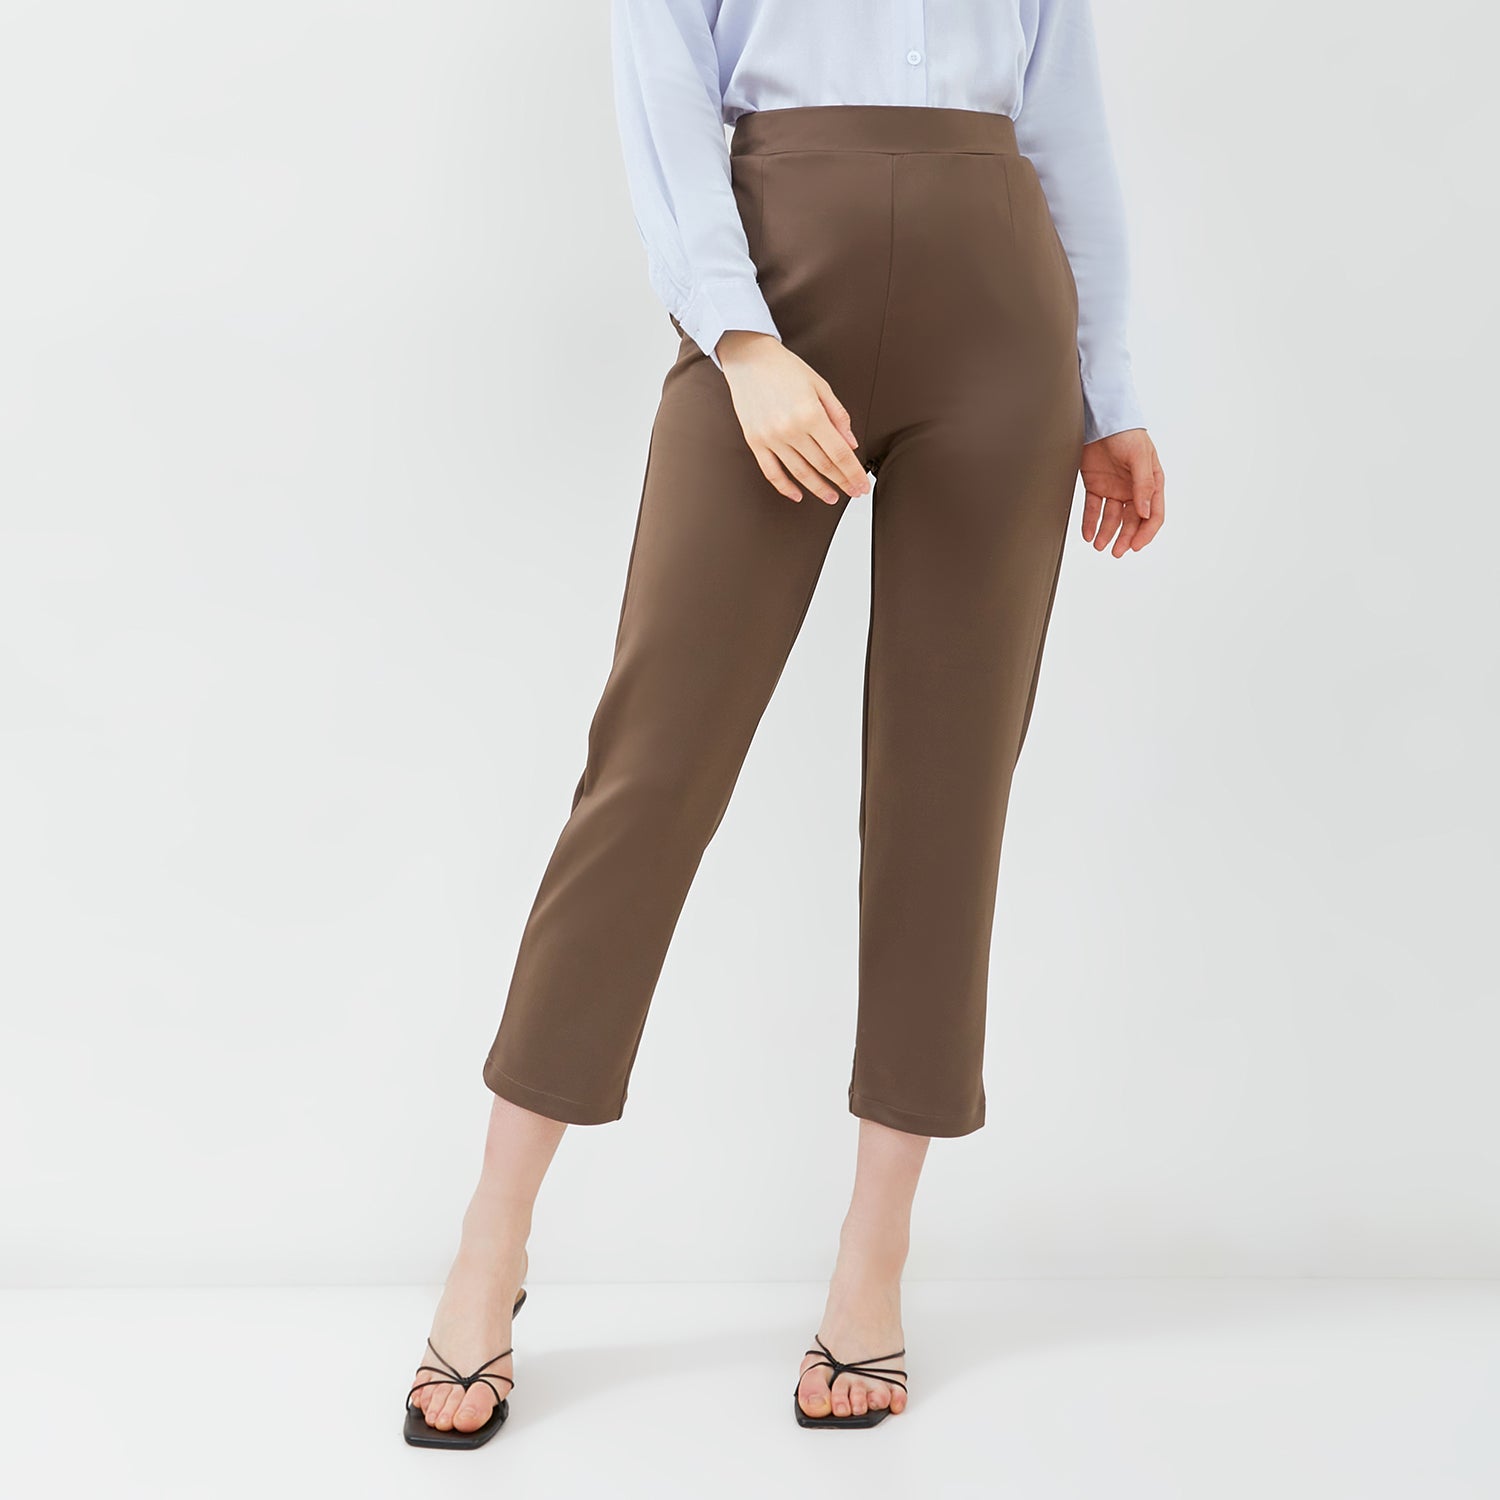 New Circa Pants - Celana Kantor Wanita [MYPNW 07B]